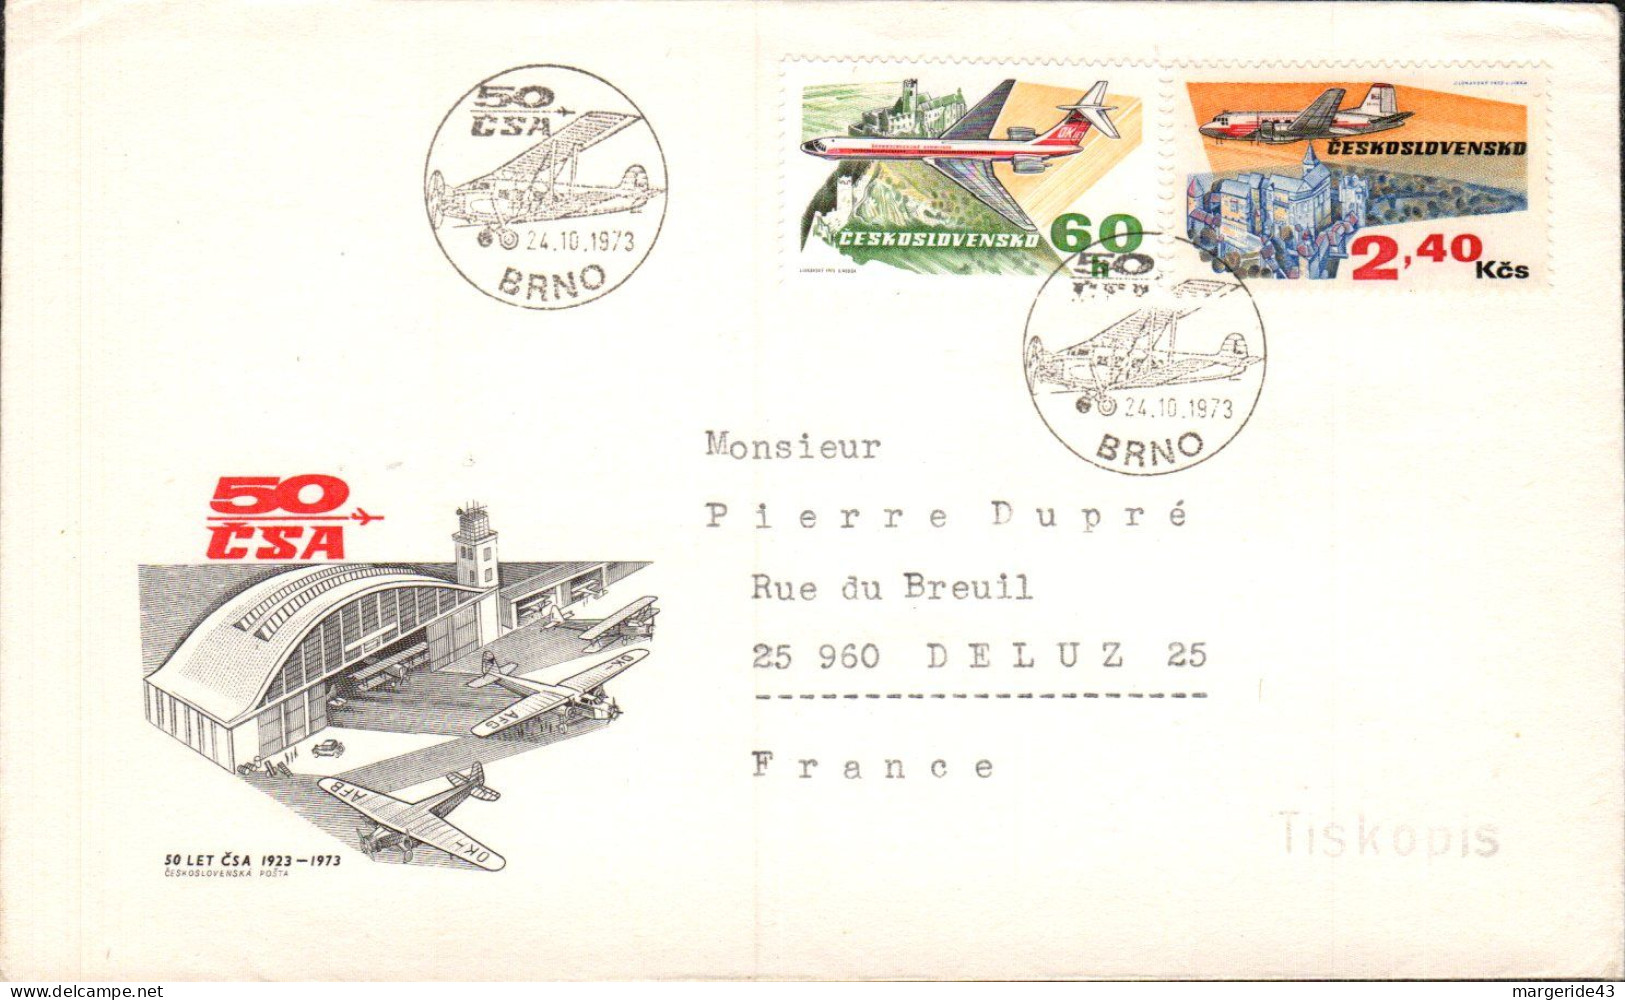 TCHECOSLOVAQUIE LETTRE FDC POUR LA FRANCE 1976 - Briefe U. Dokumente